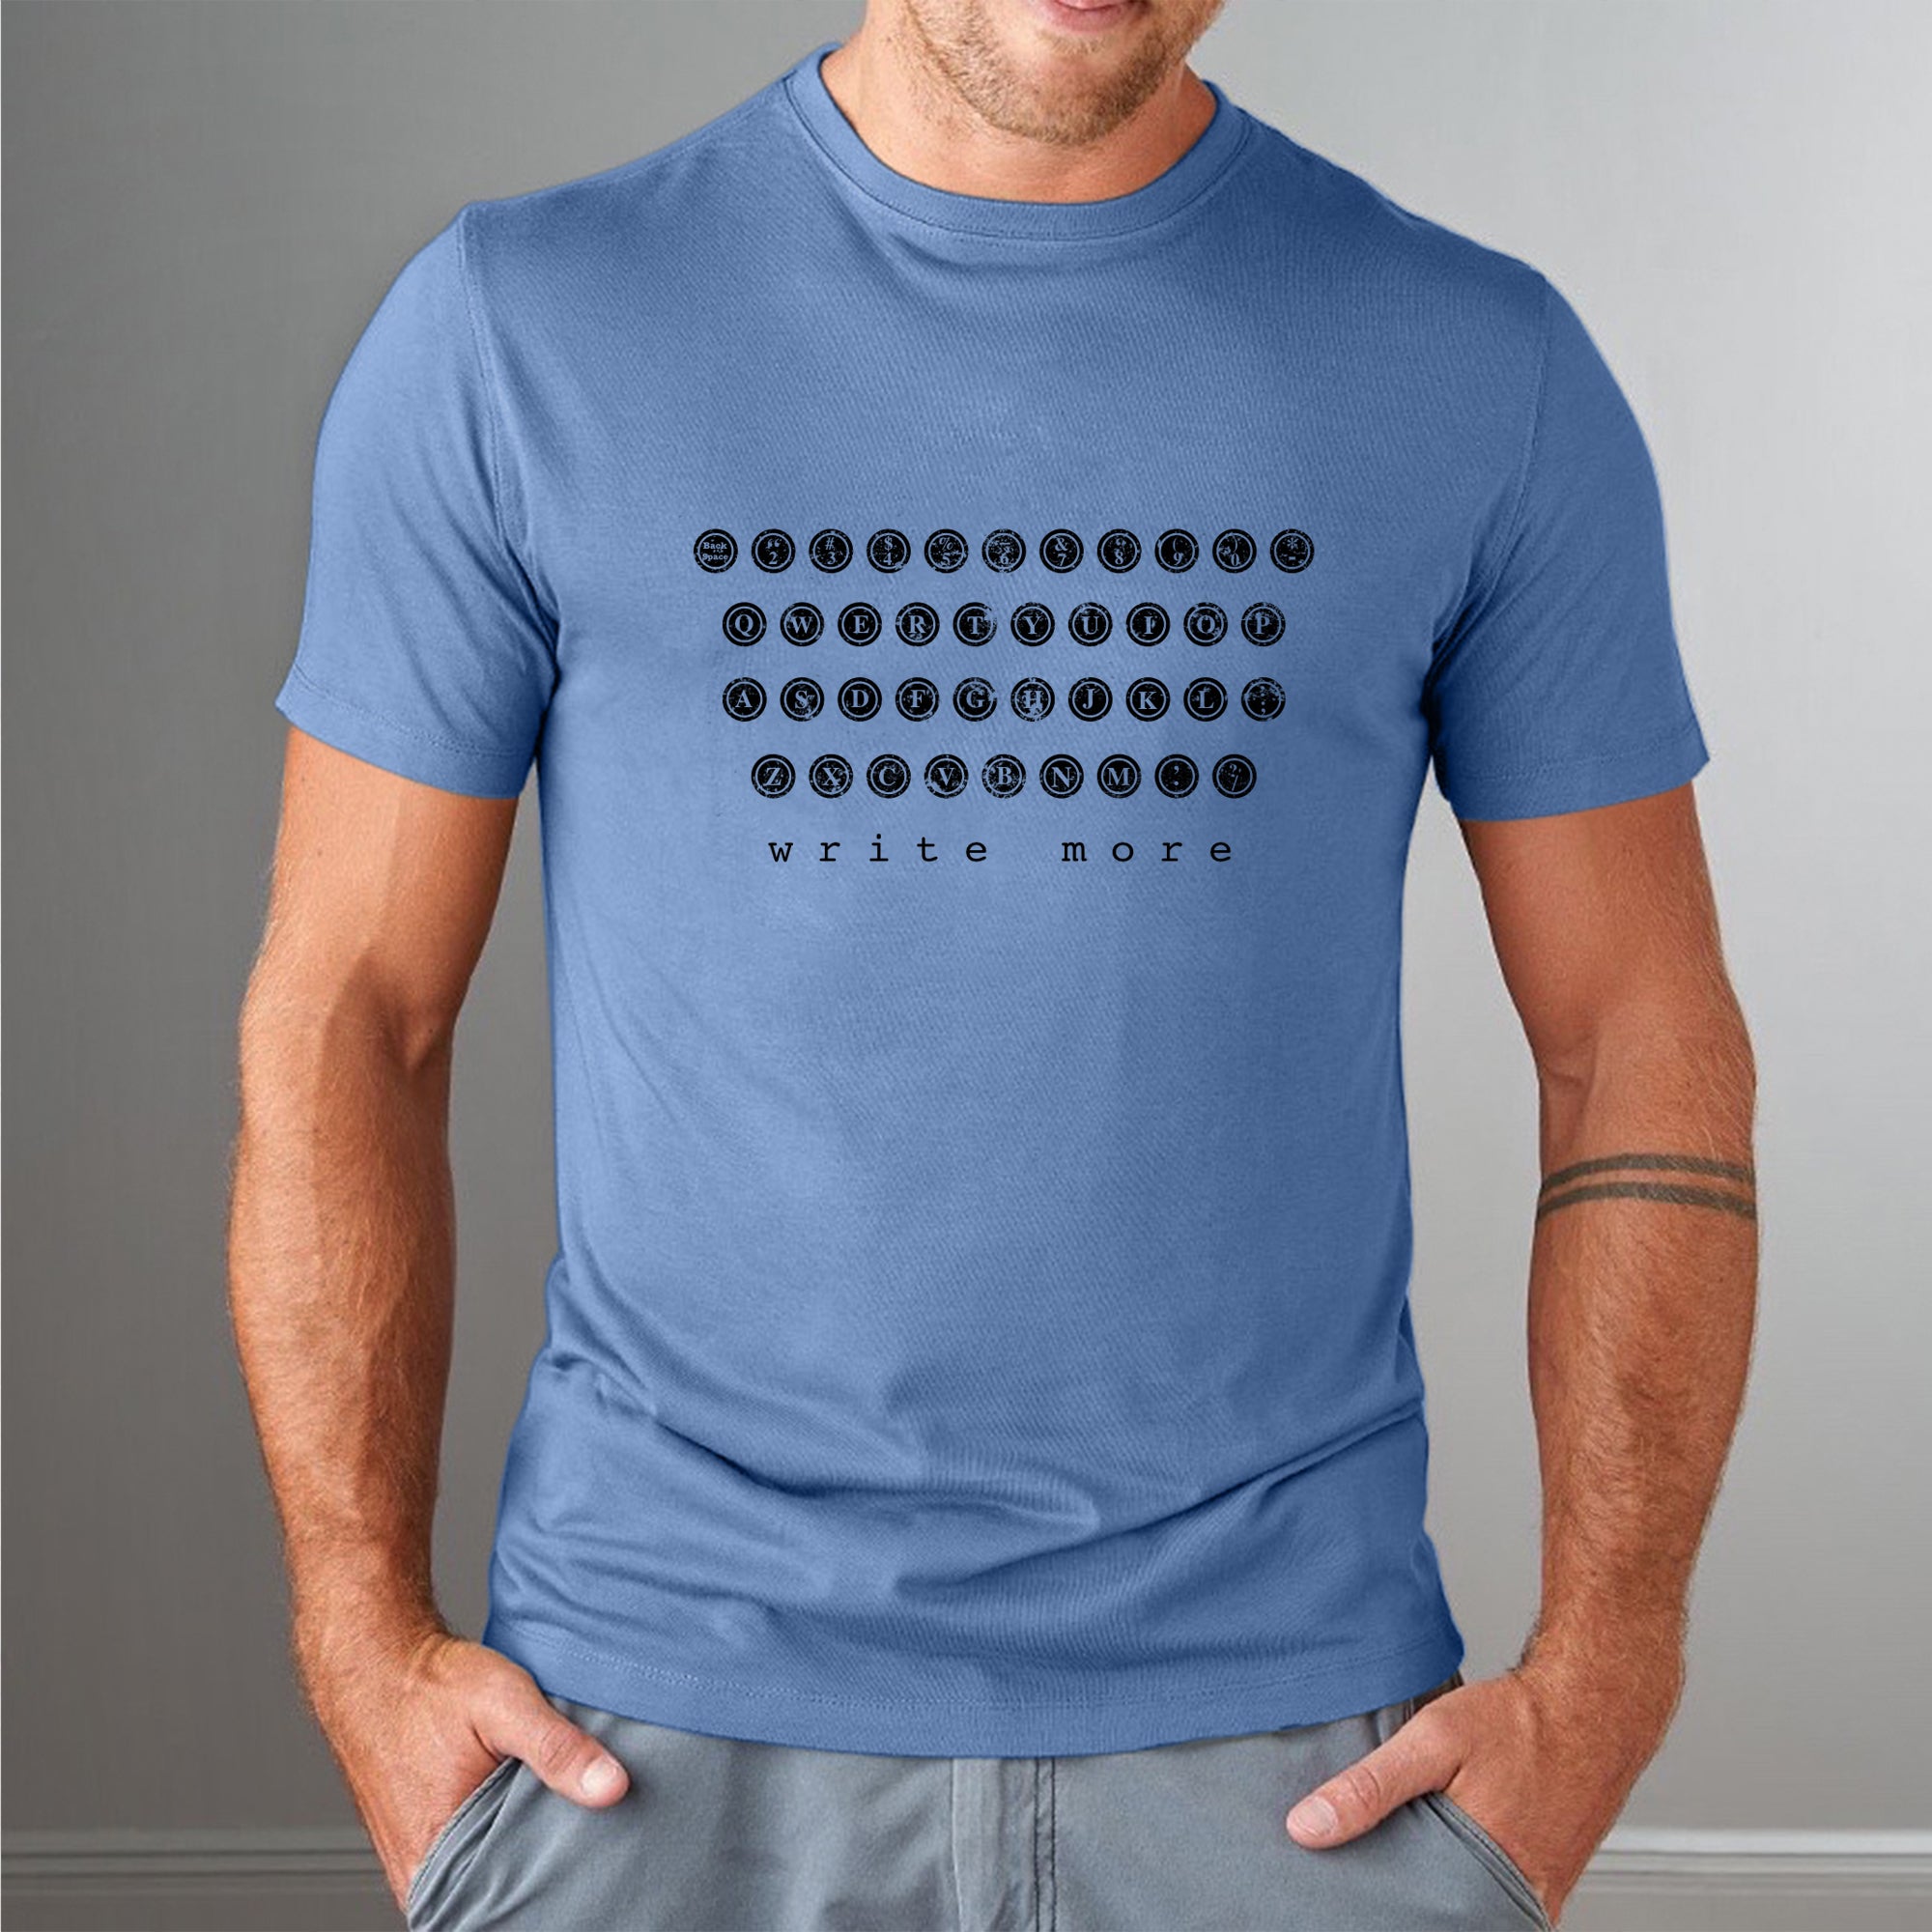 Typewriter T-shirt for Men - Write More